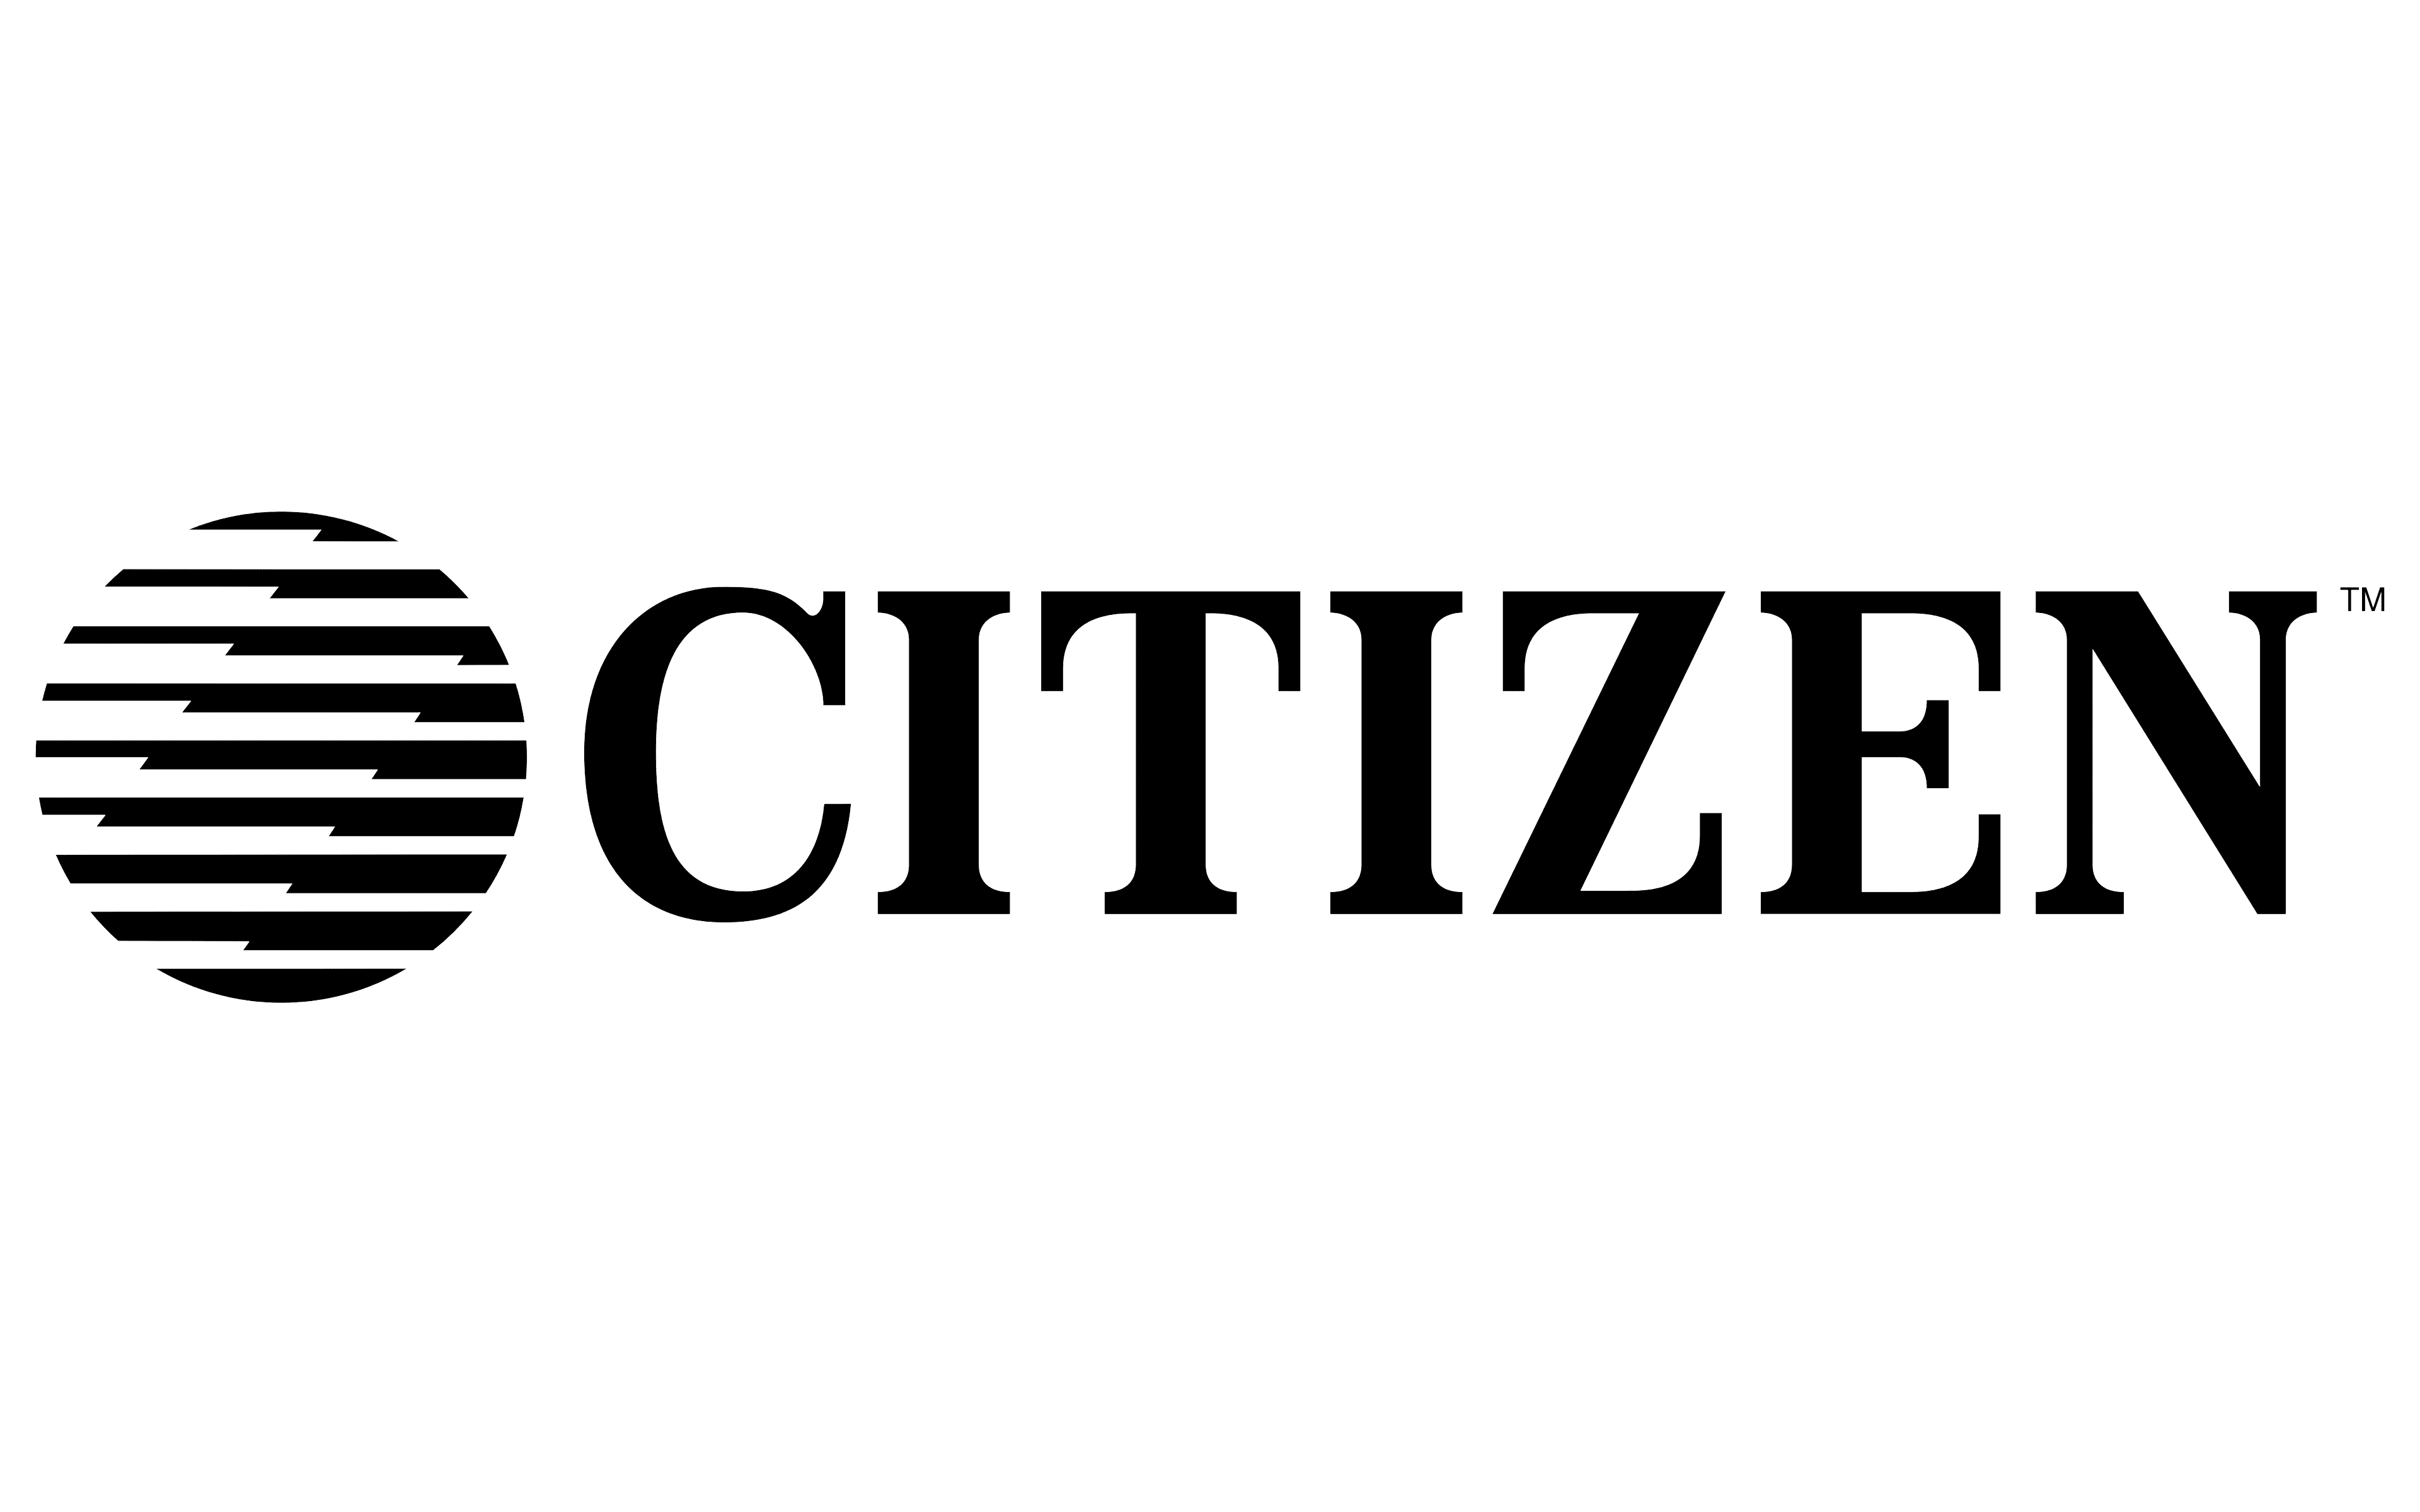 Citizen-Logo